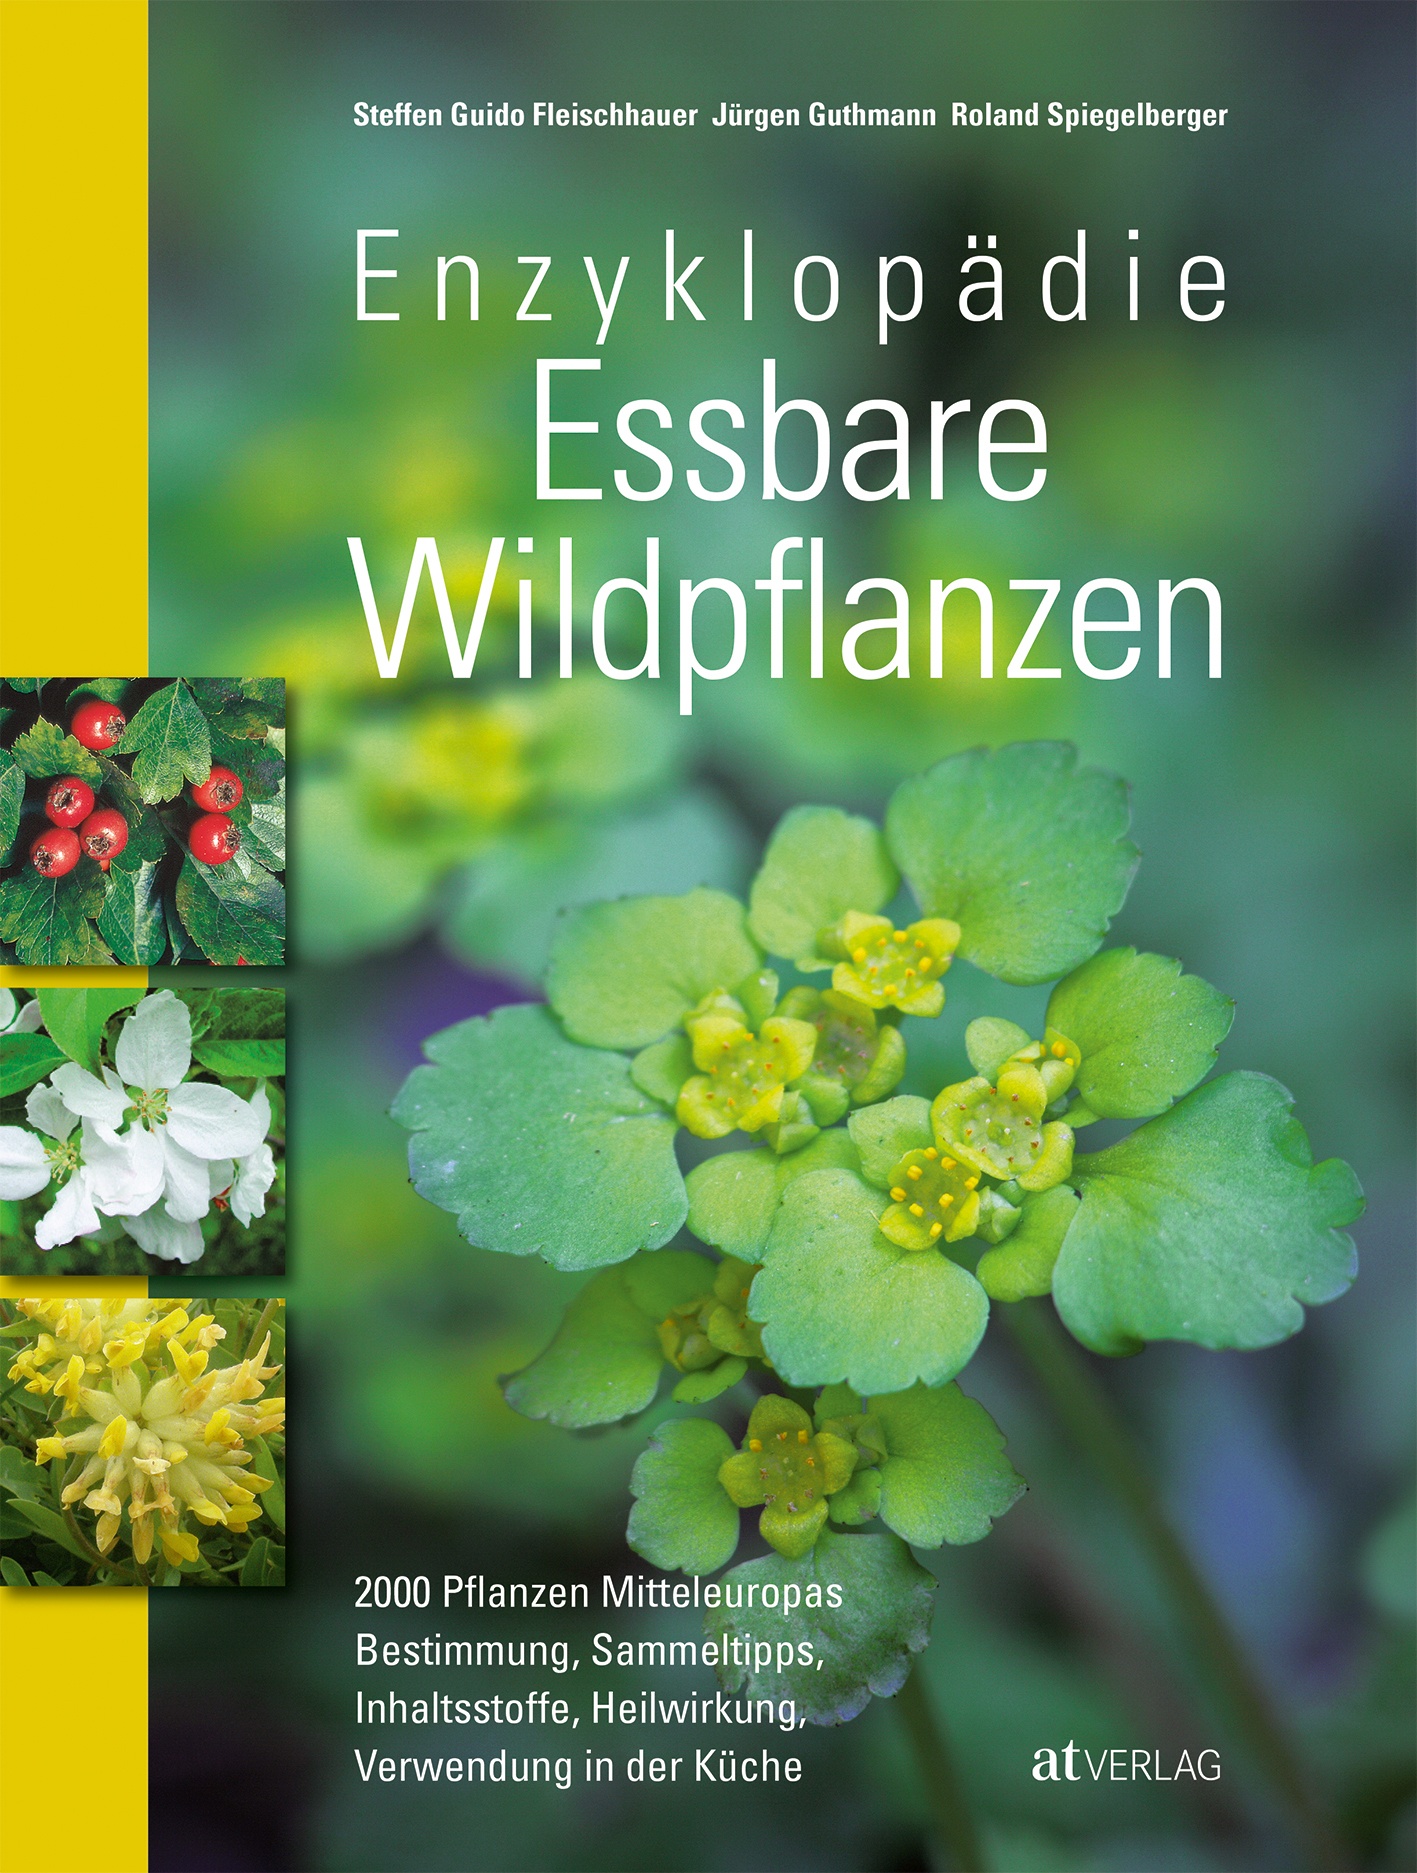 1000 essbare Wildpflanzen Enzyklopädie Bushcraft Prepper Survival Handbuch 